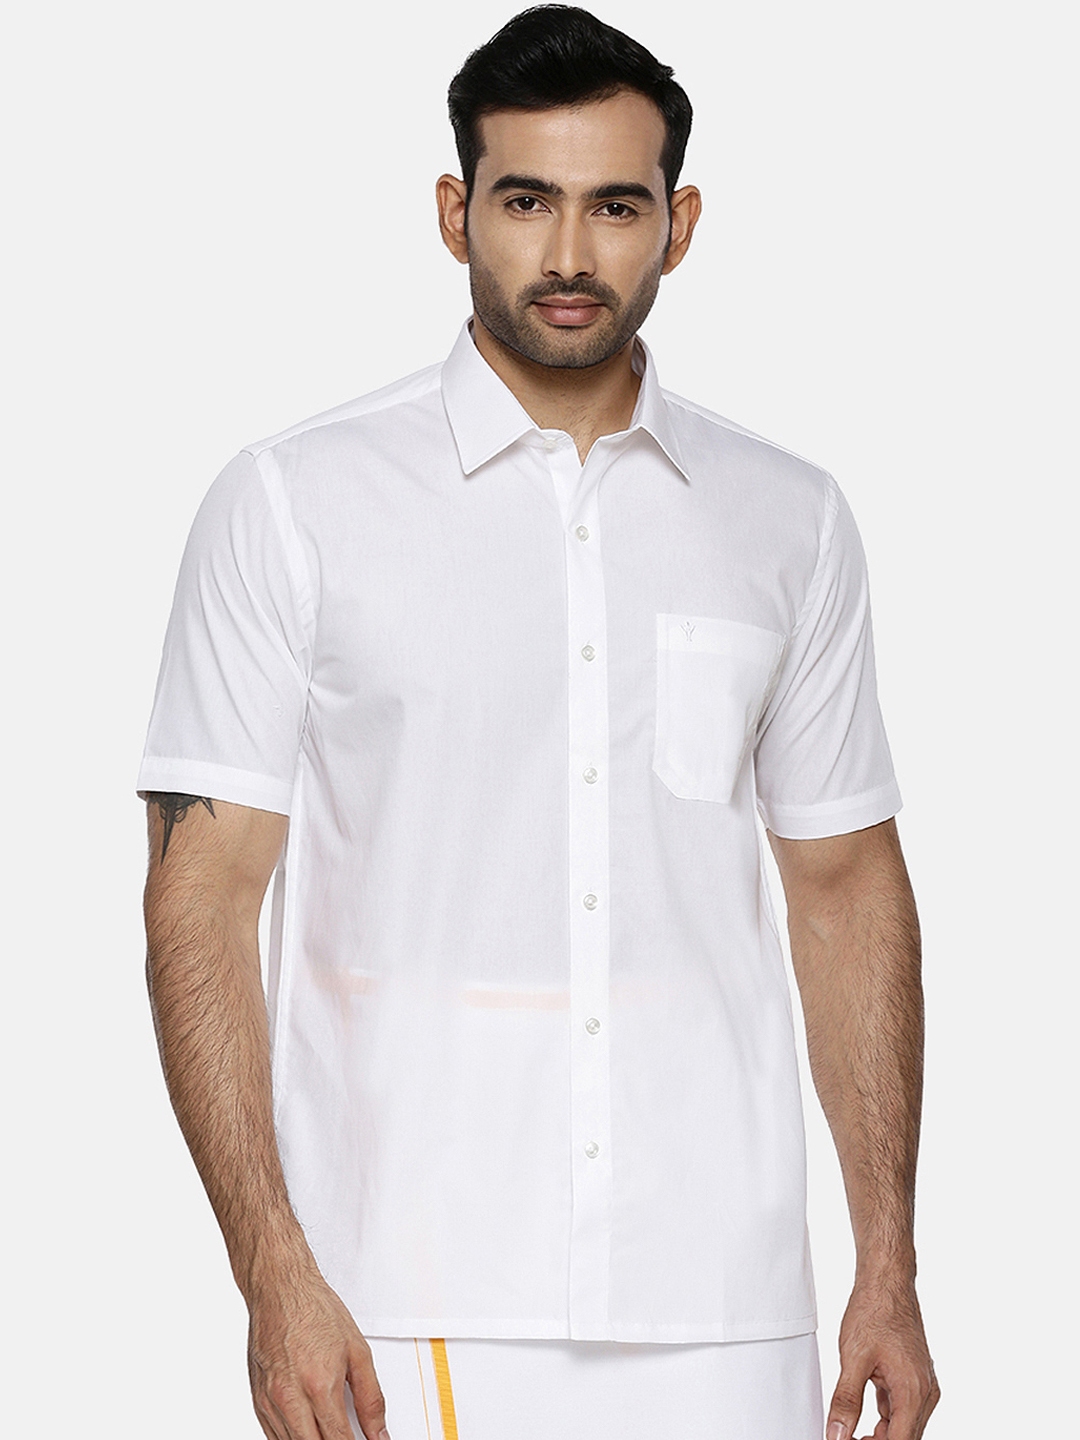 Buy Ramraj Men White Original Regular Fit Solid Wrinkle Free Ethnic ...